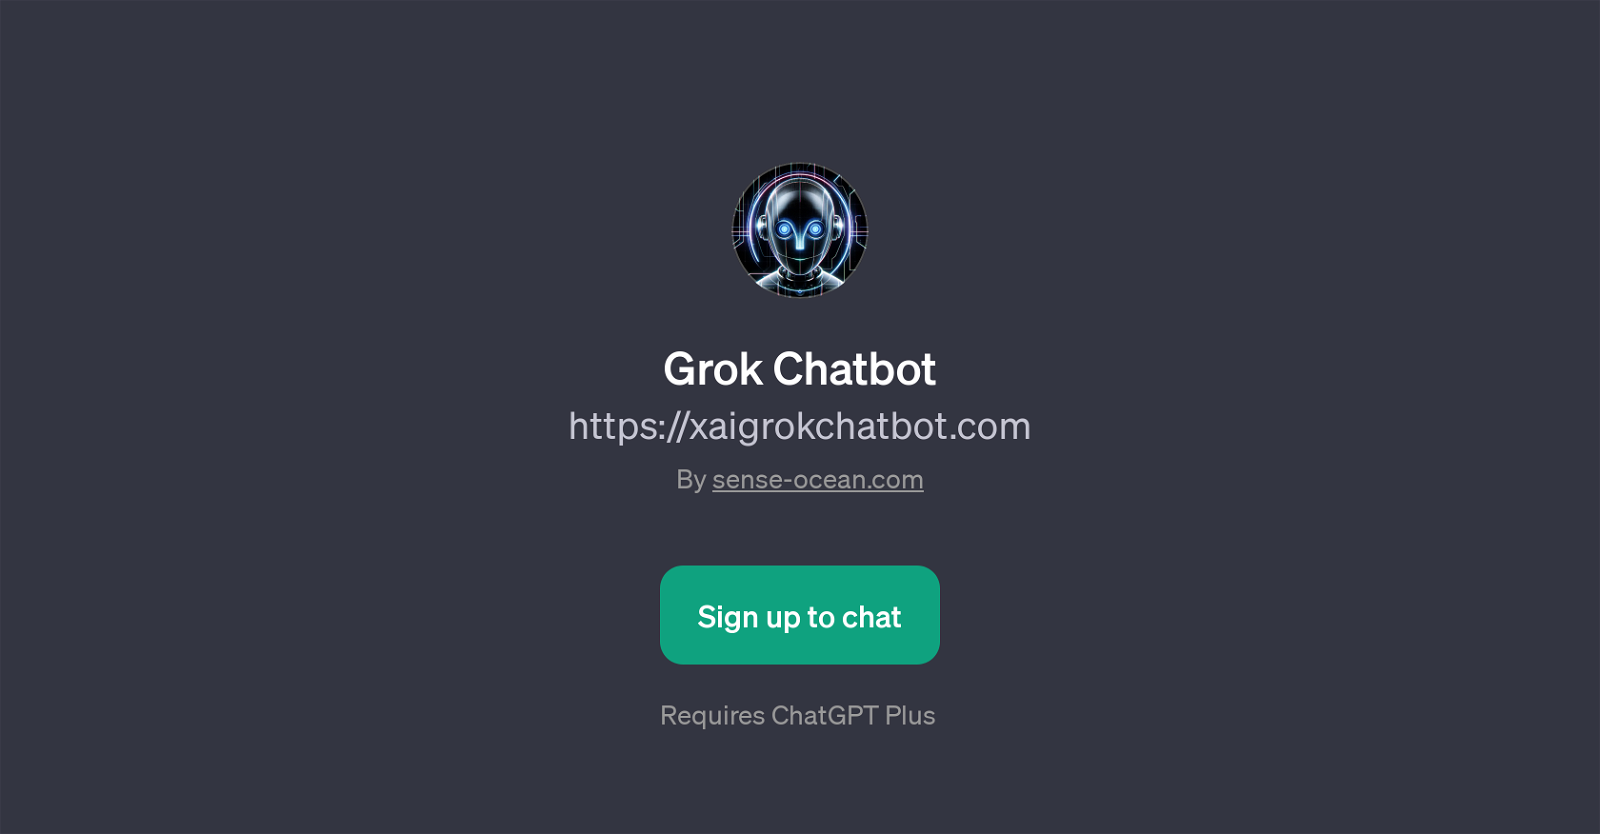 Grok Chatbot website